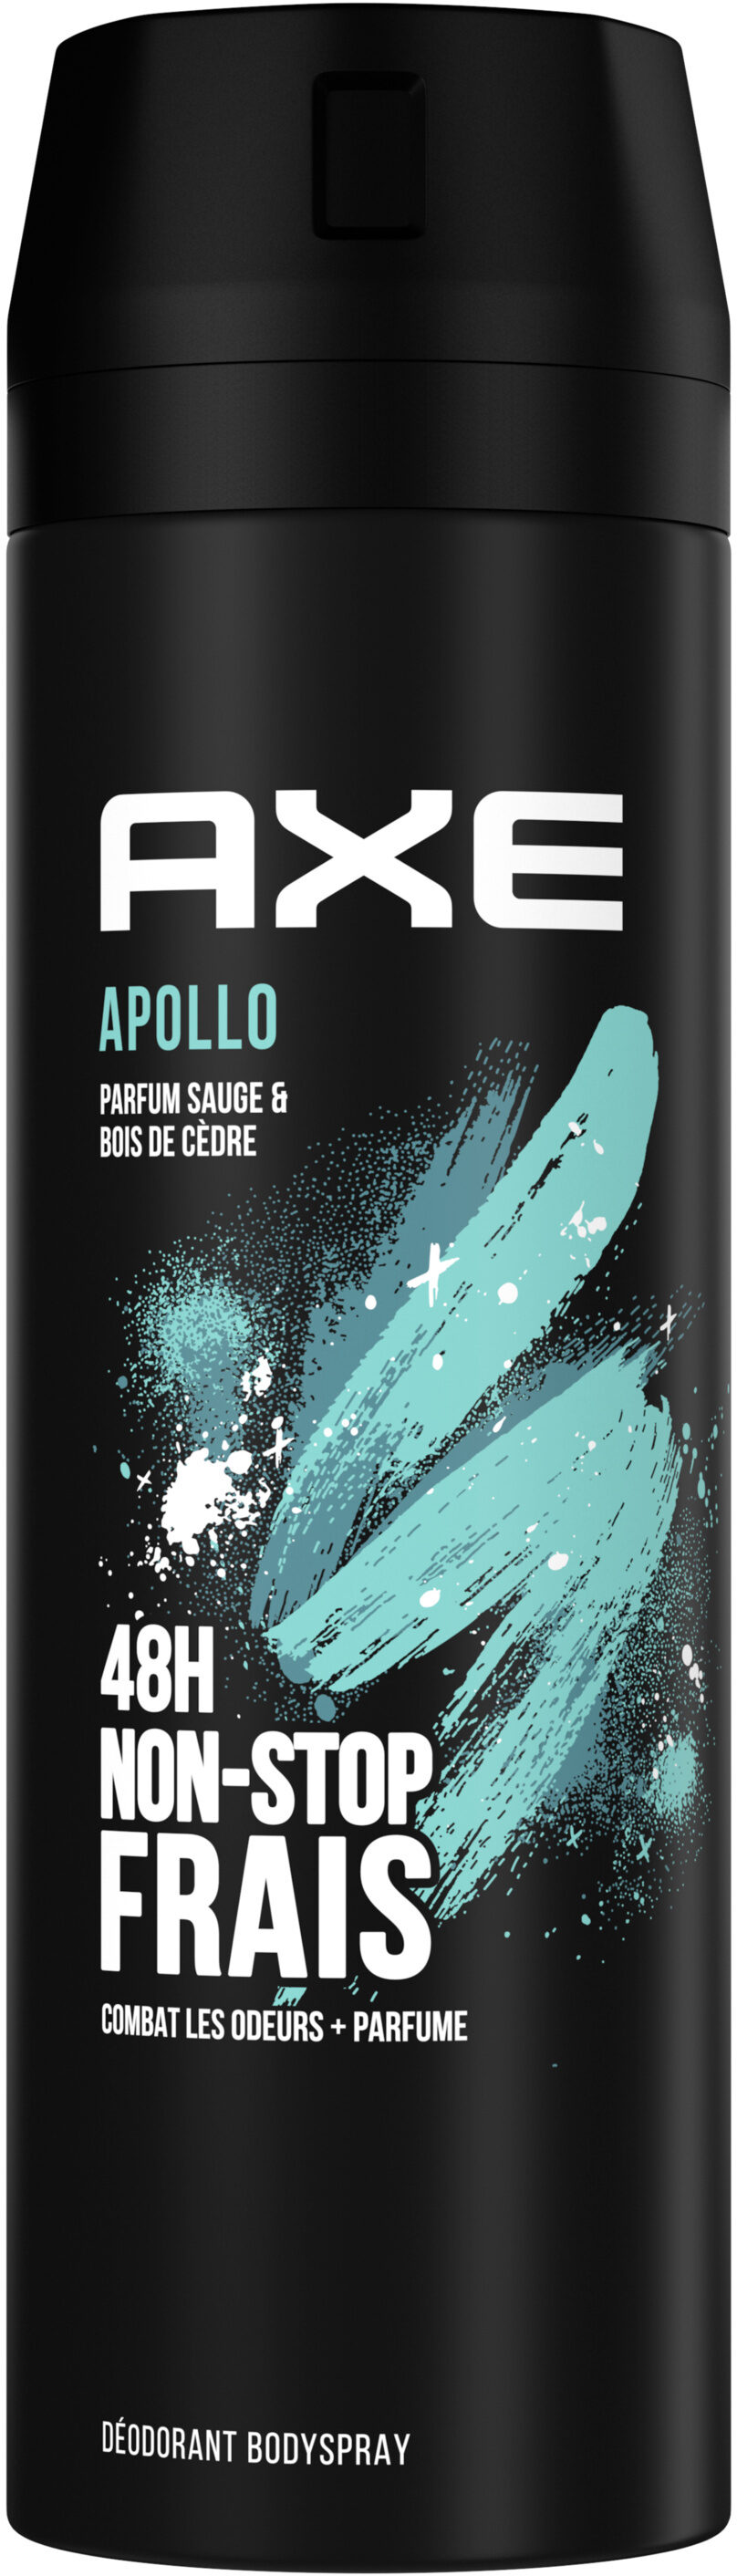 AXE Déodorant Homme Bodyspray Apollo 48h Non-Stop Frais 200ml - Produto - fr